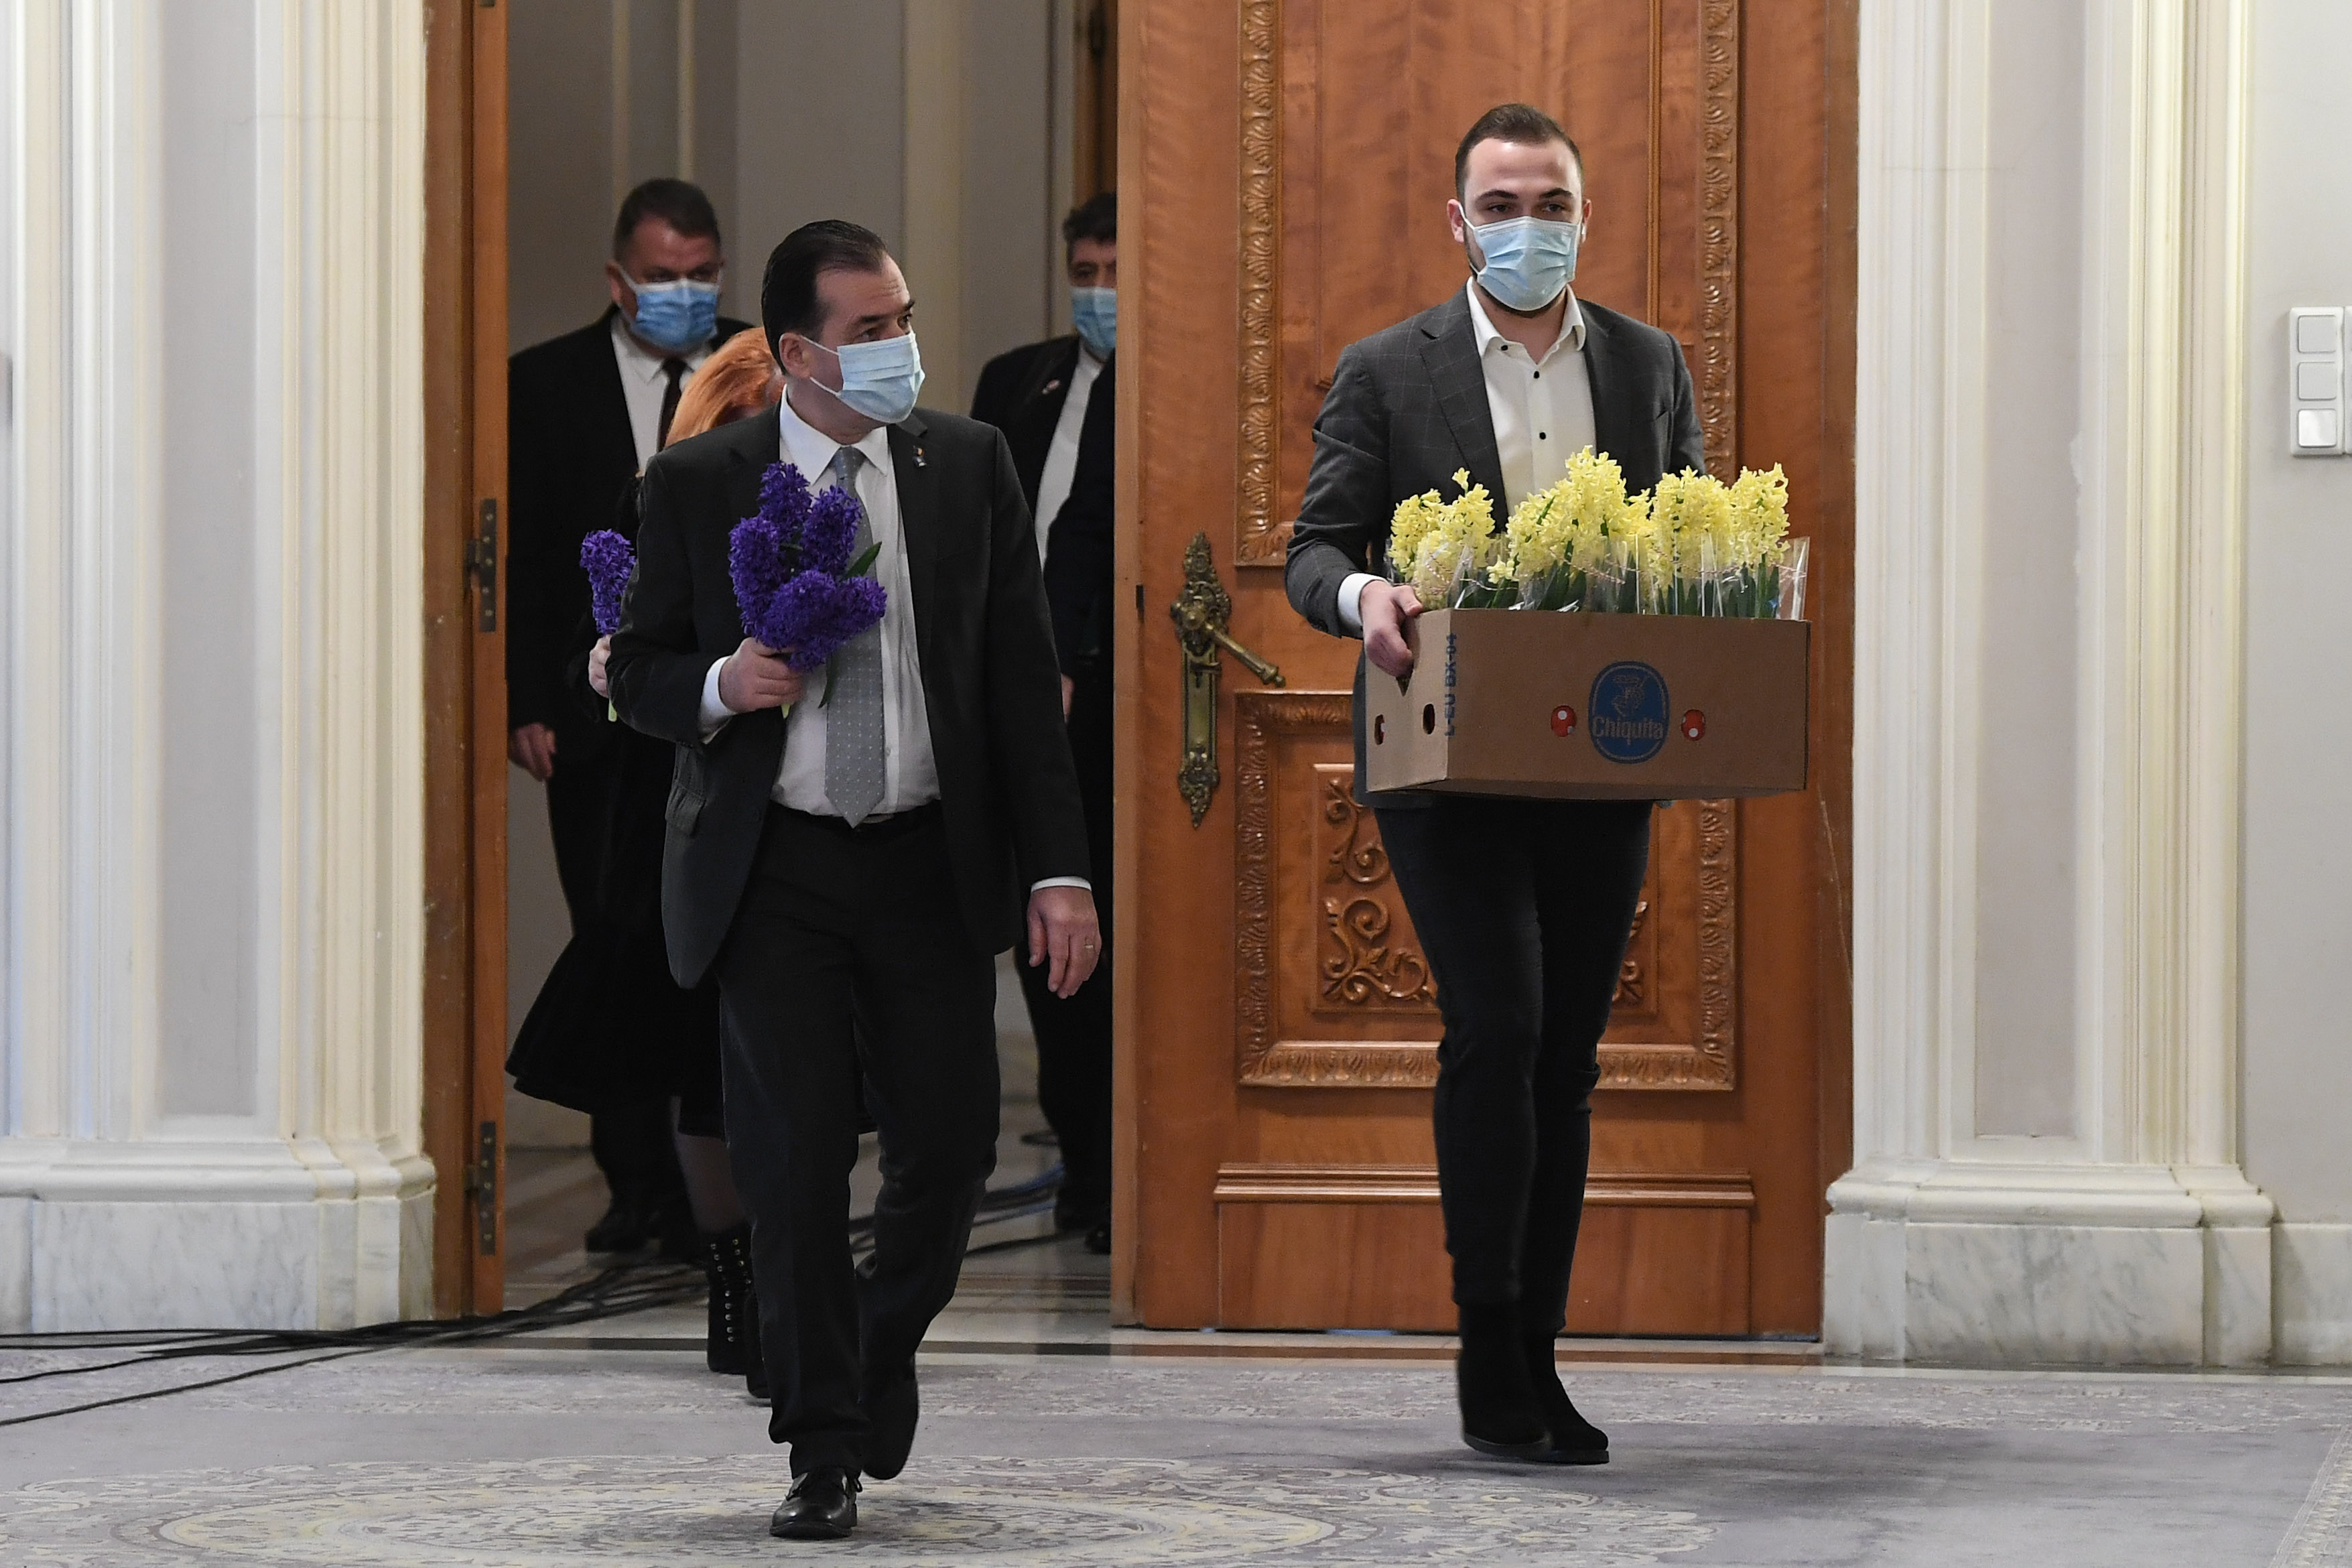 Orban a împărțit flori, fără mănuși: ”Nu pot fi un transmițător al bolii. M-am spălat”